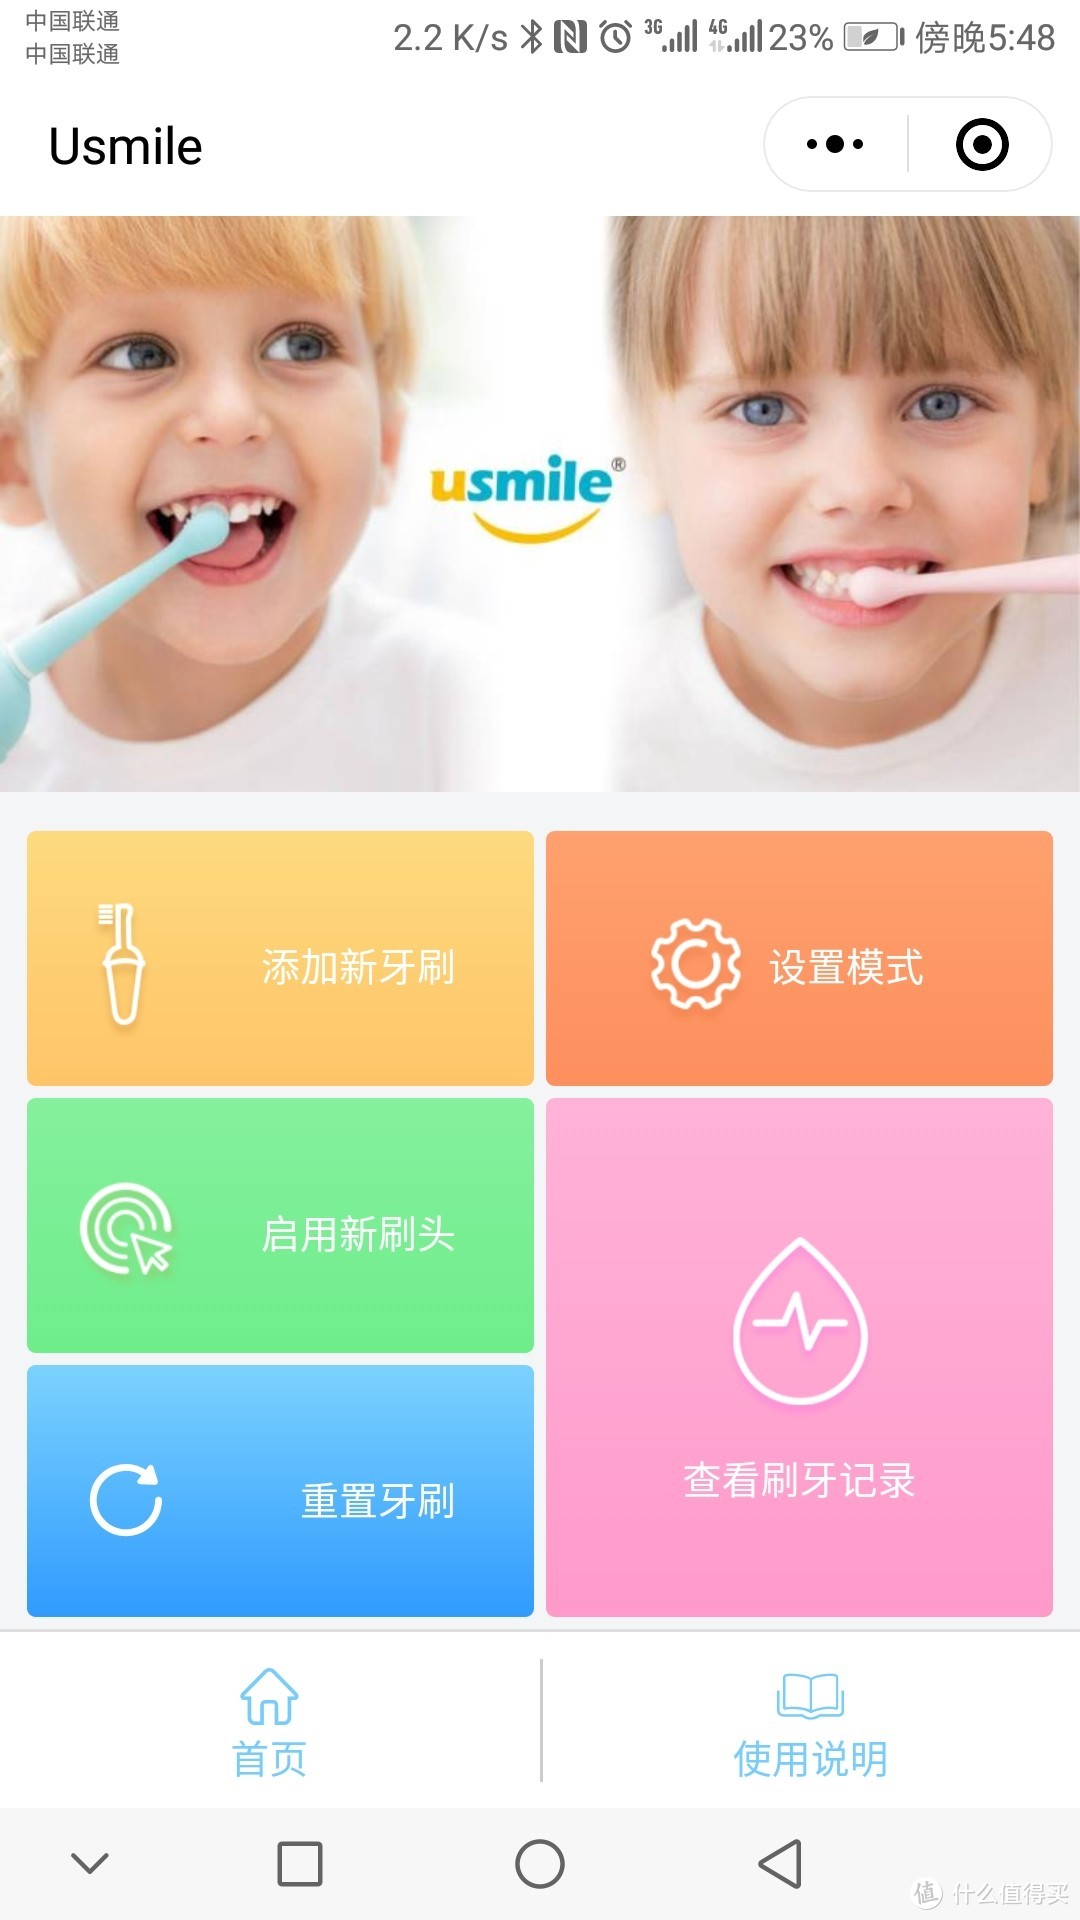 呵护宝宝的牙齿，助他健康成长----usmile Q1冰淇淋电动牙刷体验